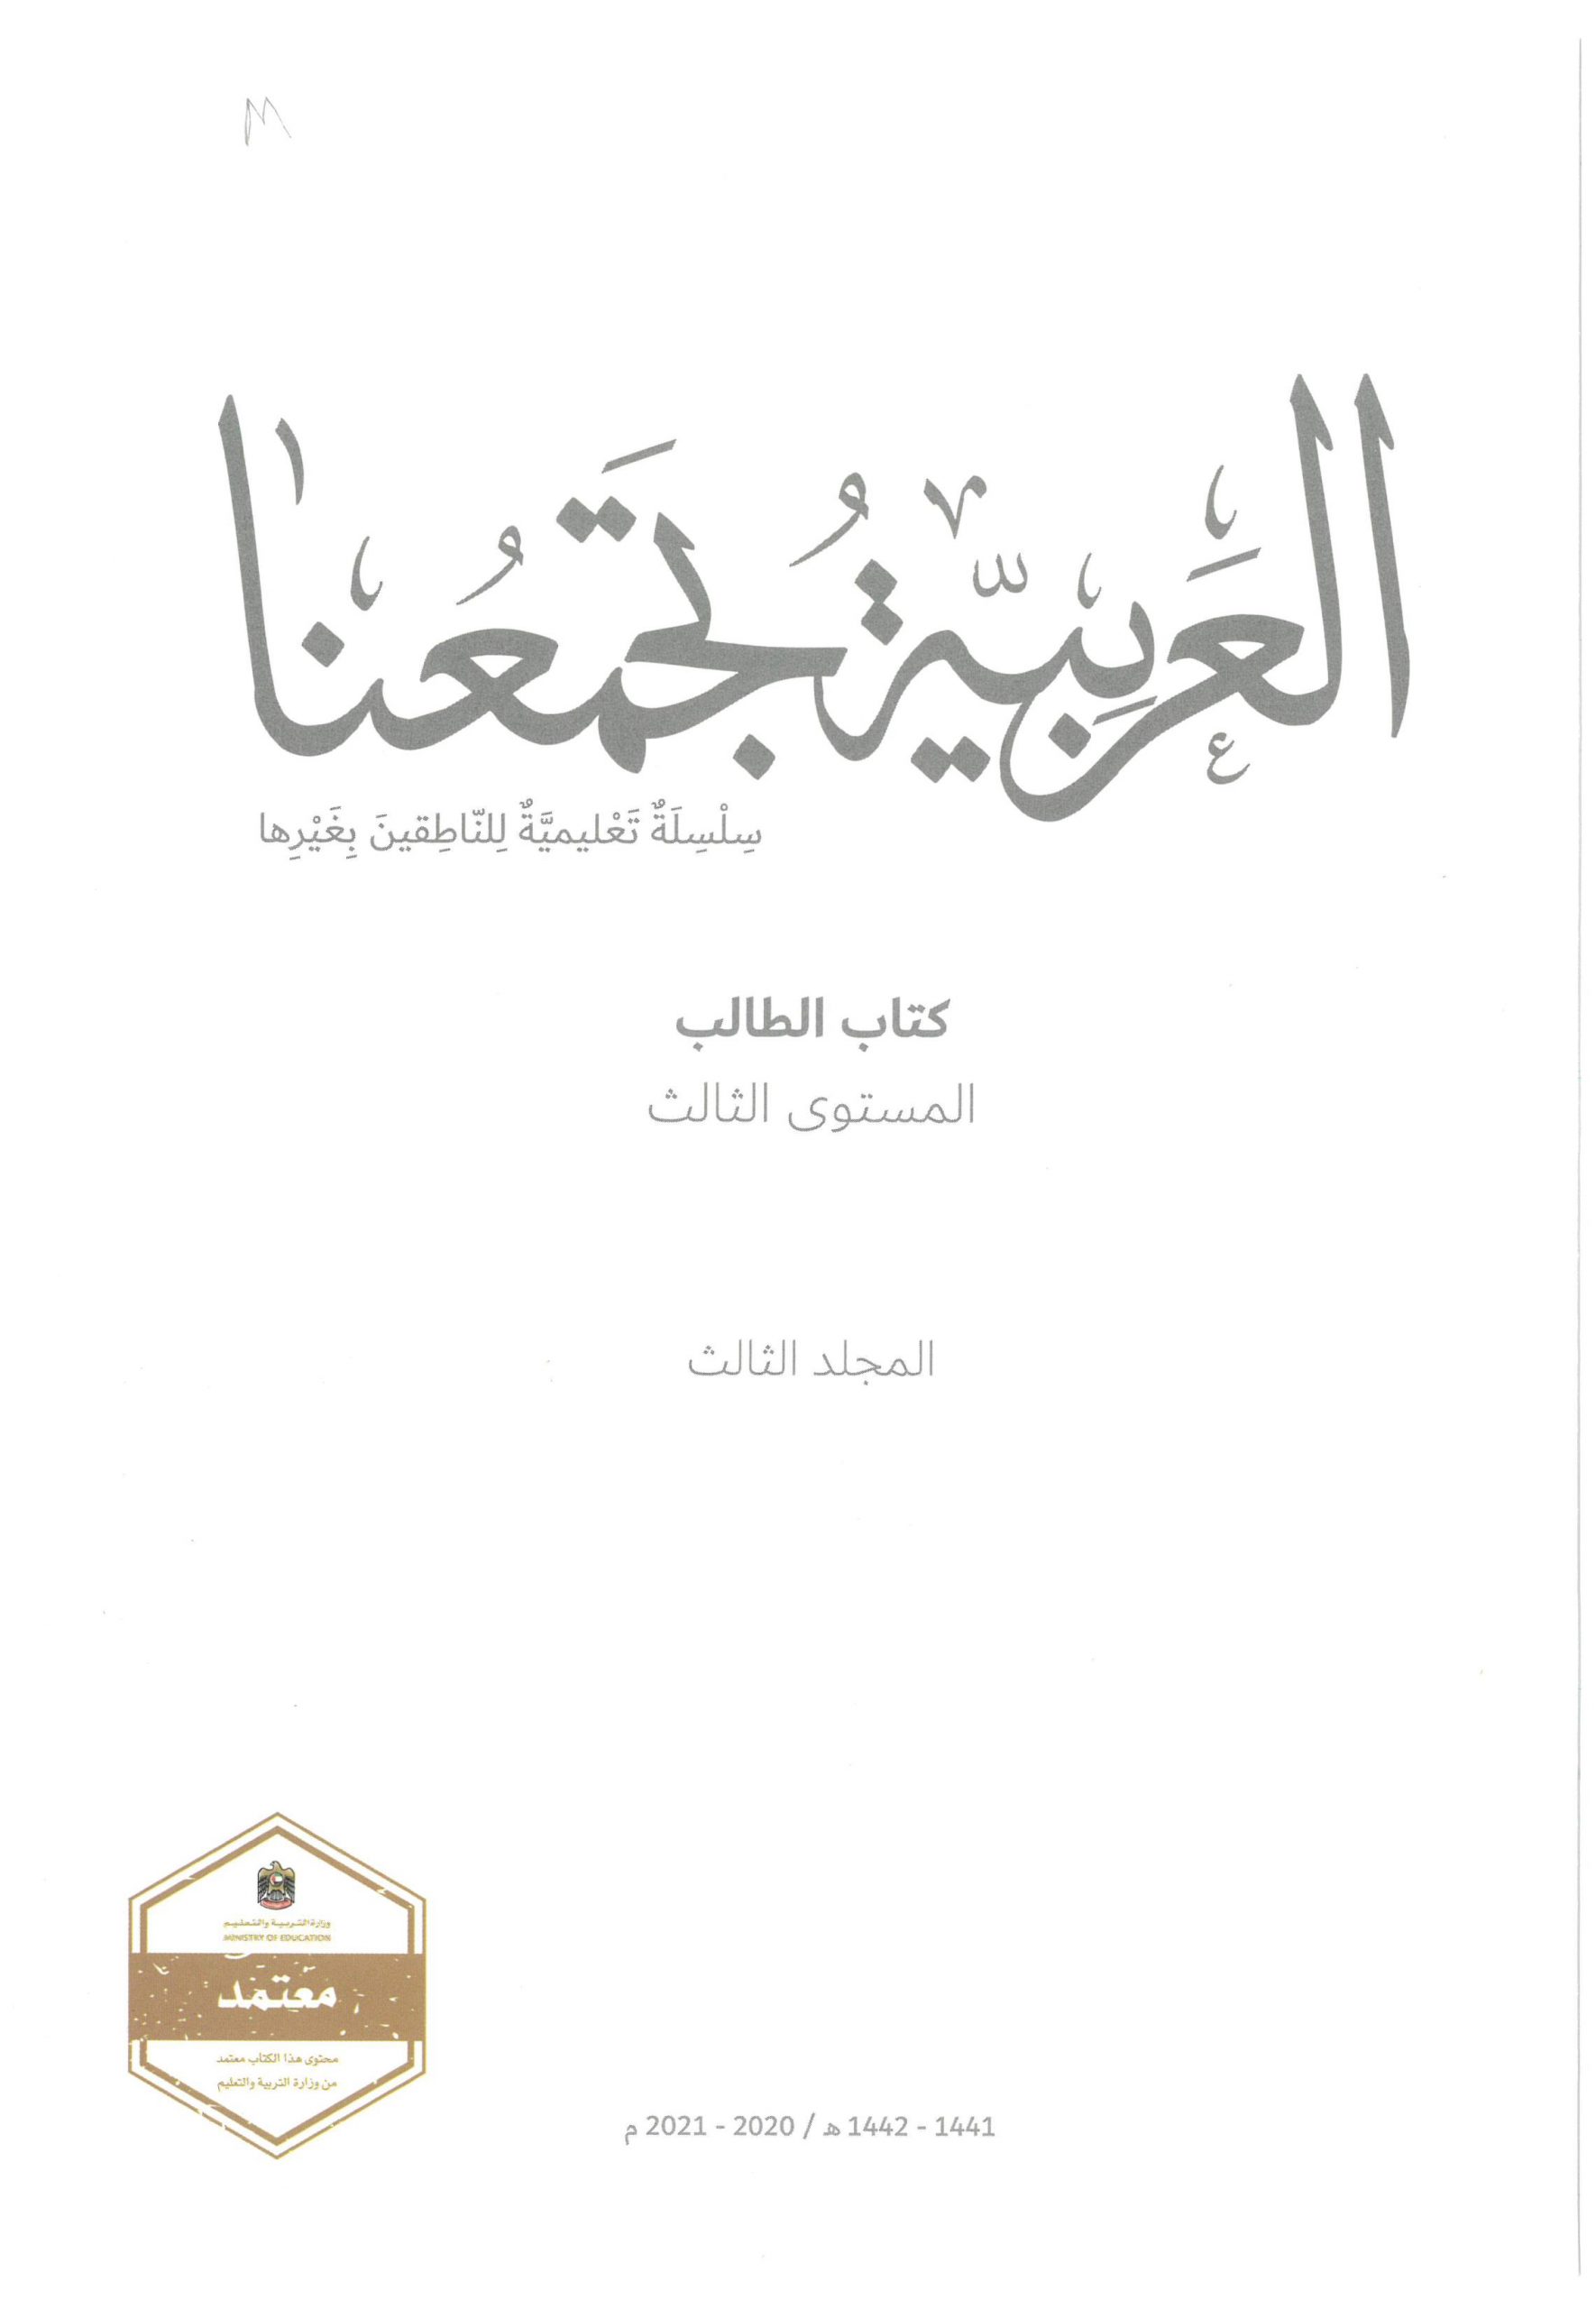 كتاب الطالب لغير الناطقين بها الفصل الدراسي الثالث 2020-2021 الصف الثالث مادة اللغة العربية 